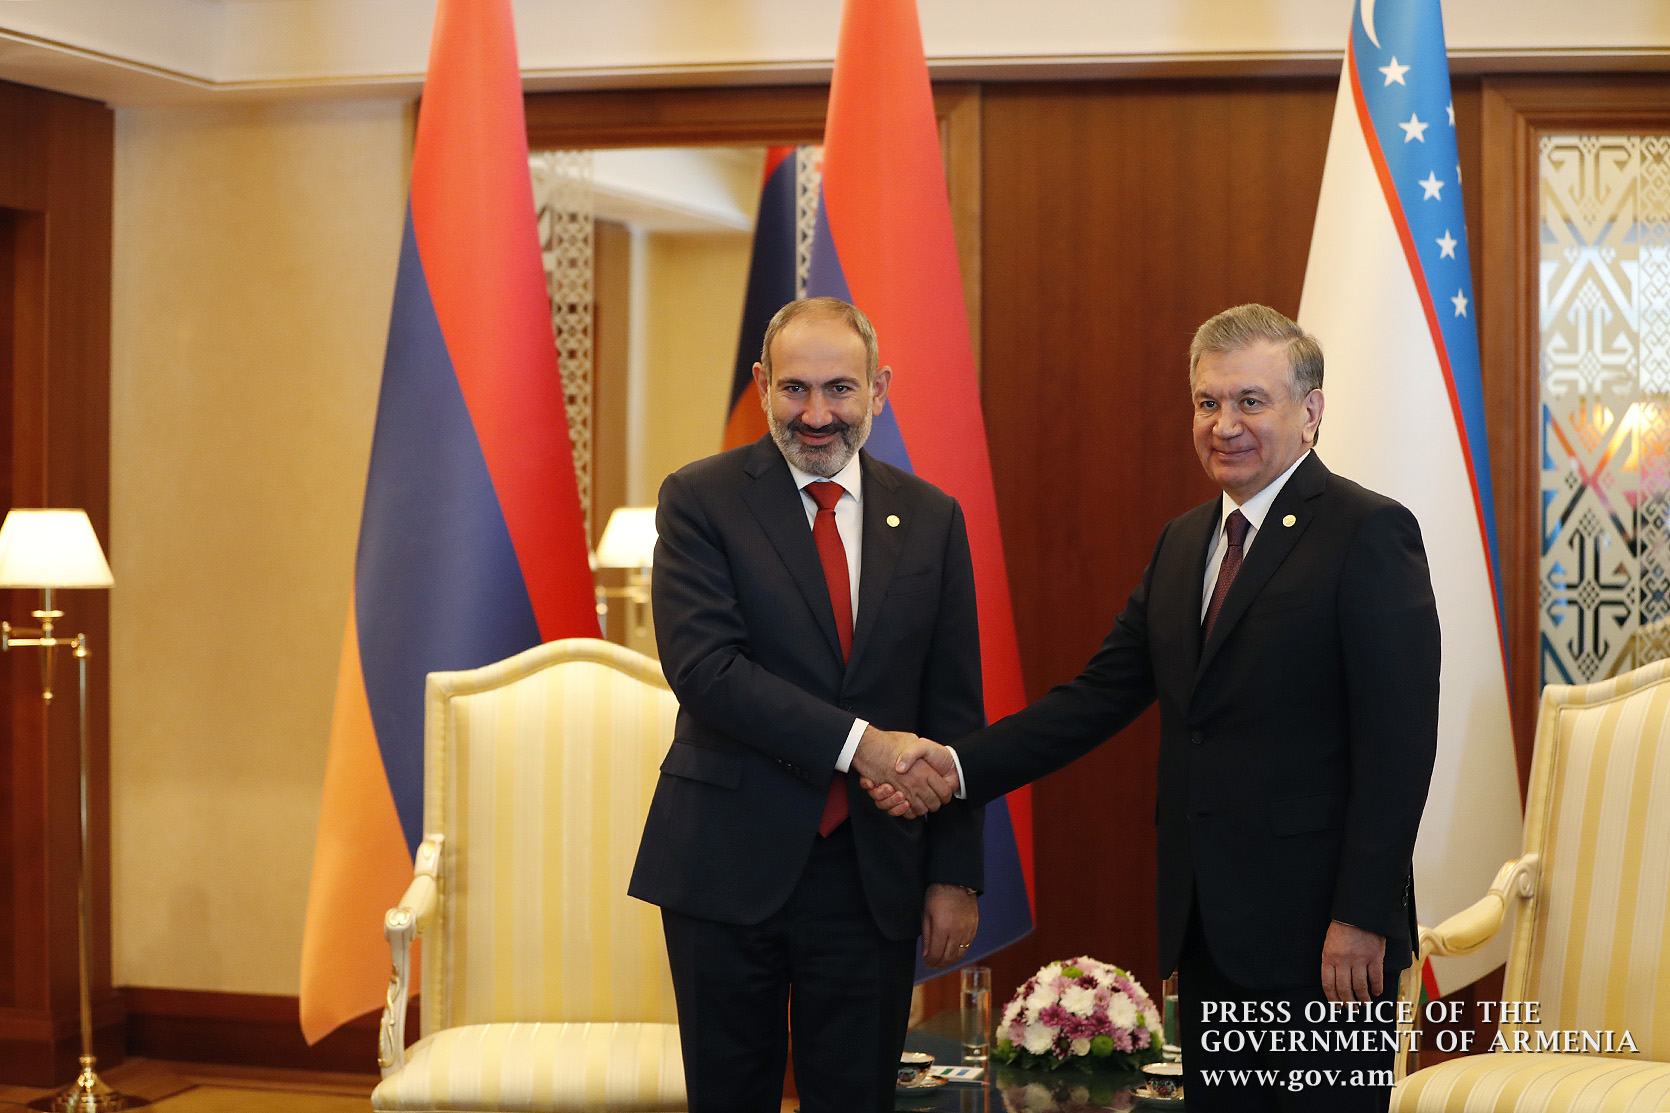 Пашинян надеется, что отношения между Арменией и Узбекистаном будут и дальше развиваться